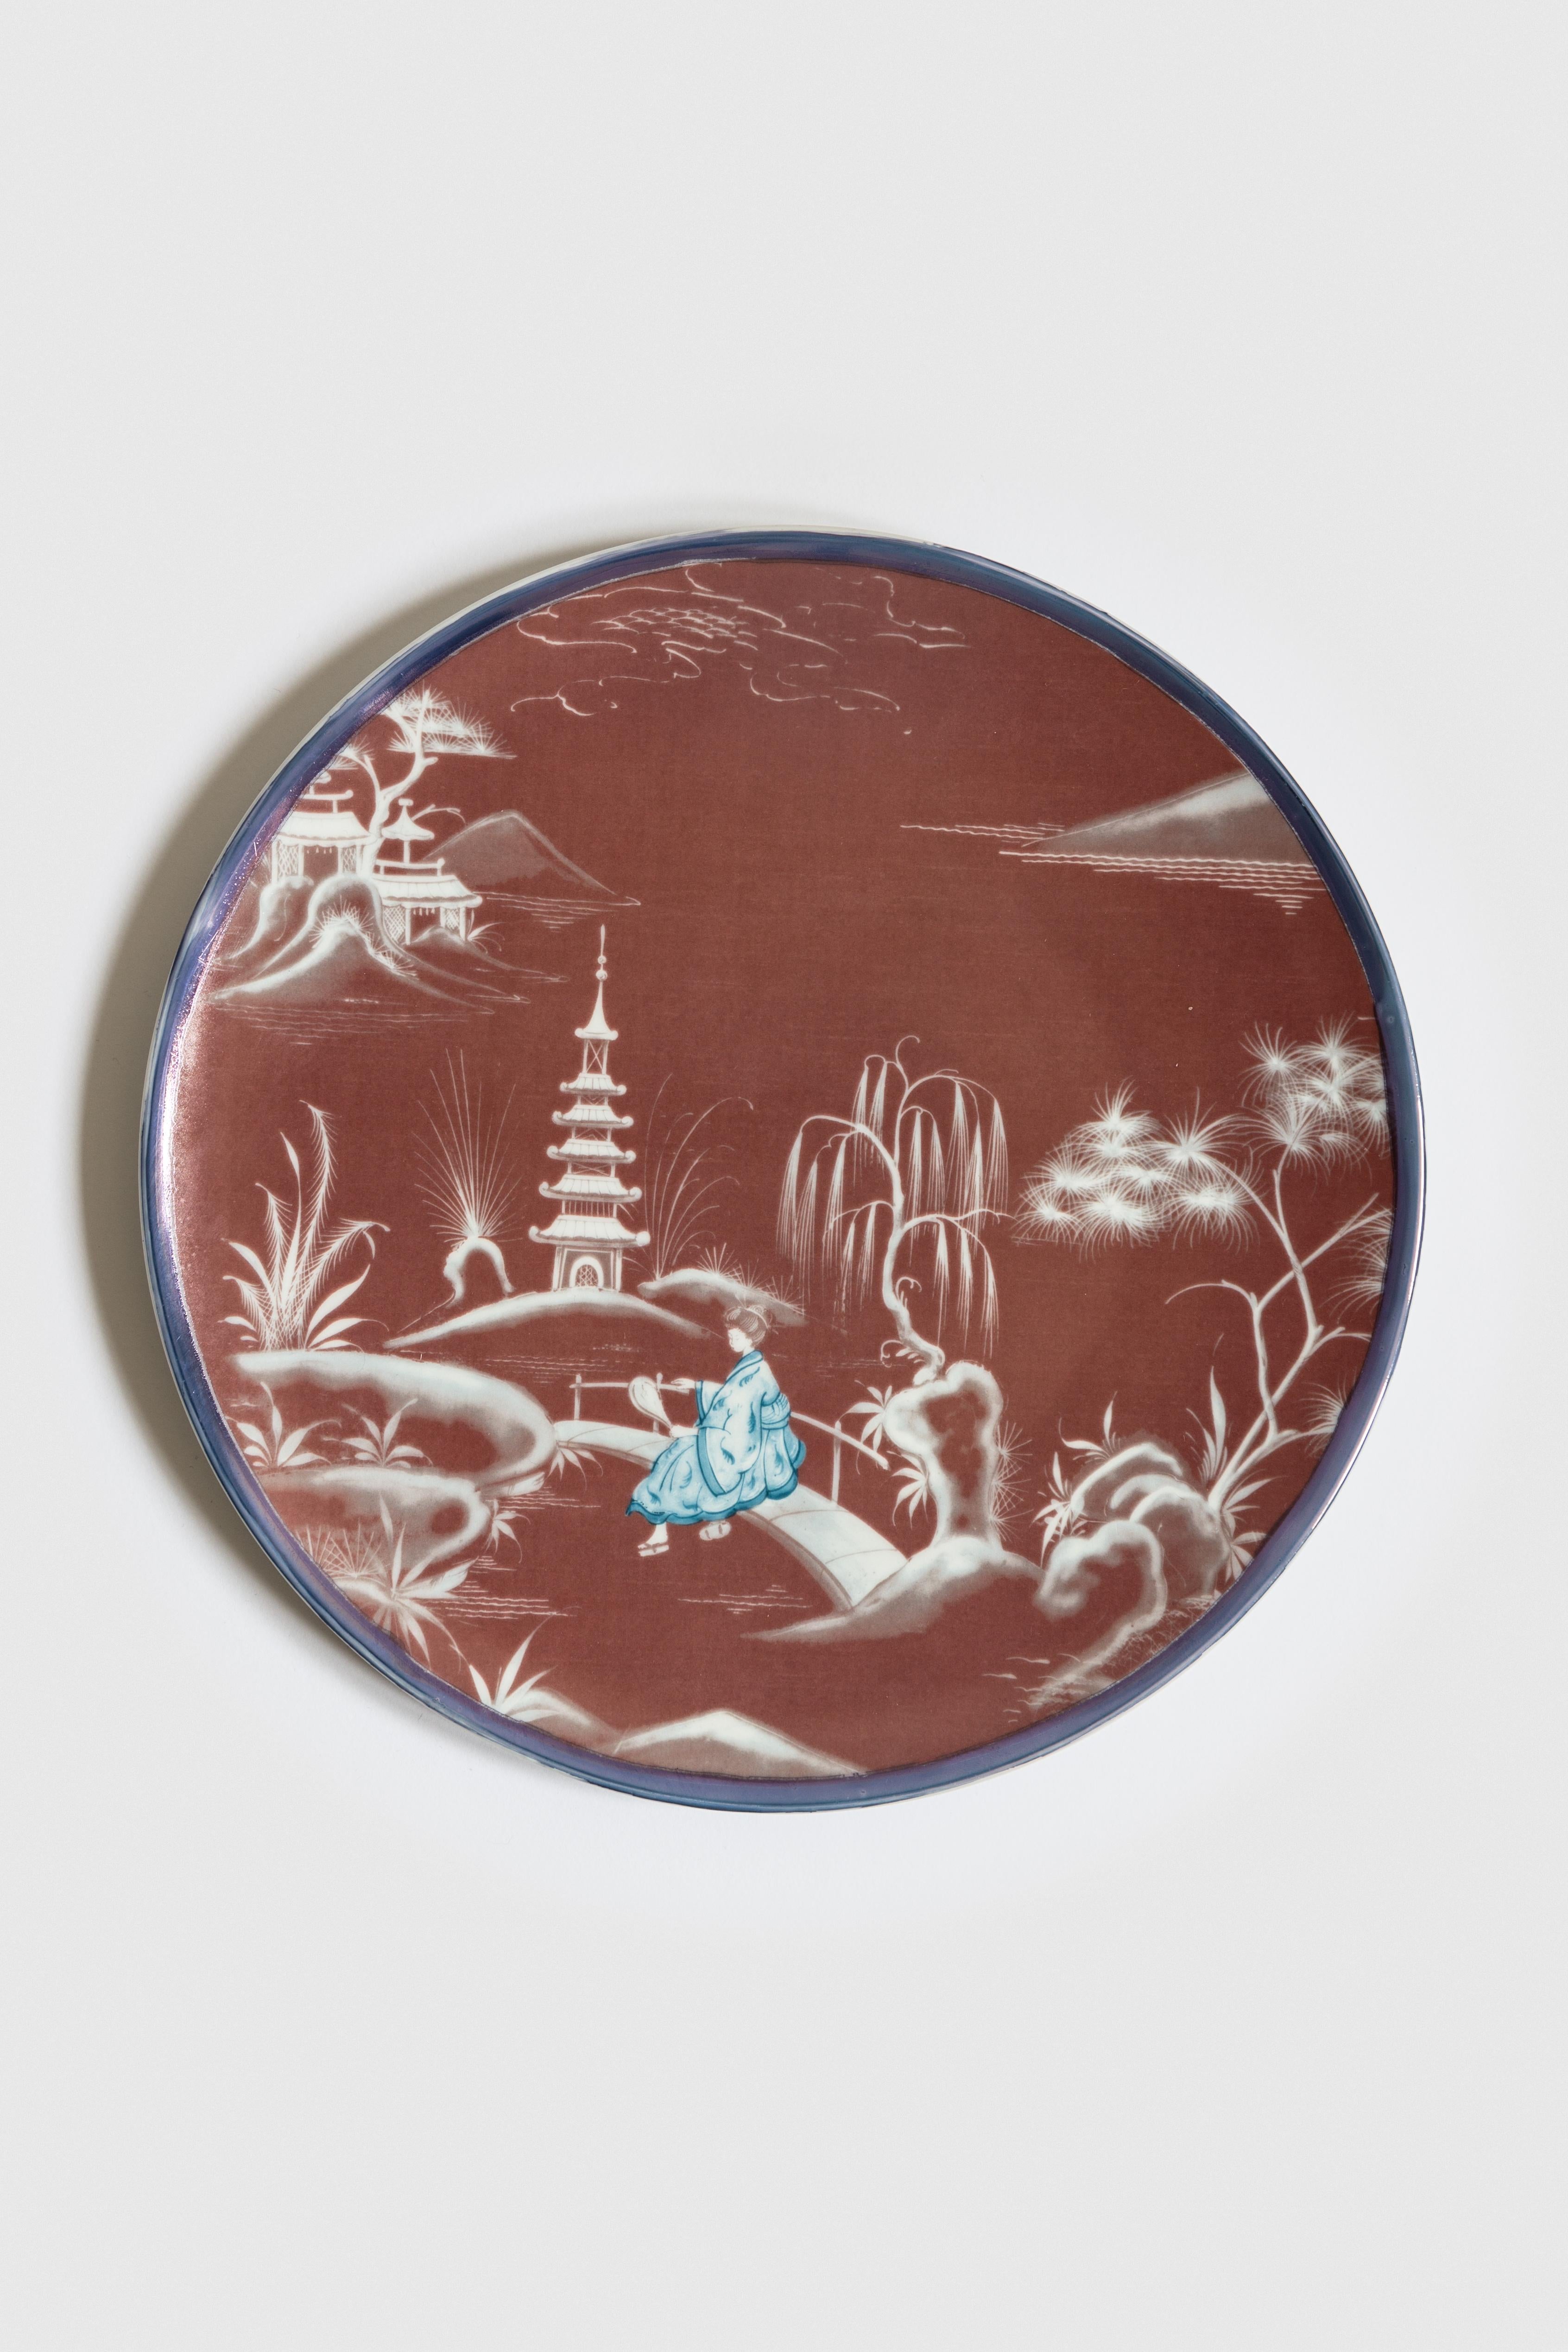 Le bordeaux et le bleu sont les couleurs primaires de cette collection d'assiettes inspirée du Japon, où des scènes japonaises anciennes se déroulent sur les rivières d'un lac féerique.